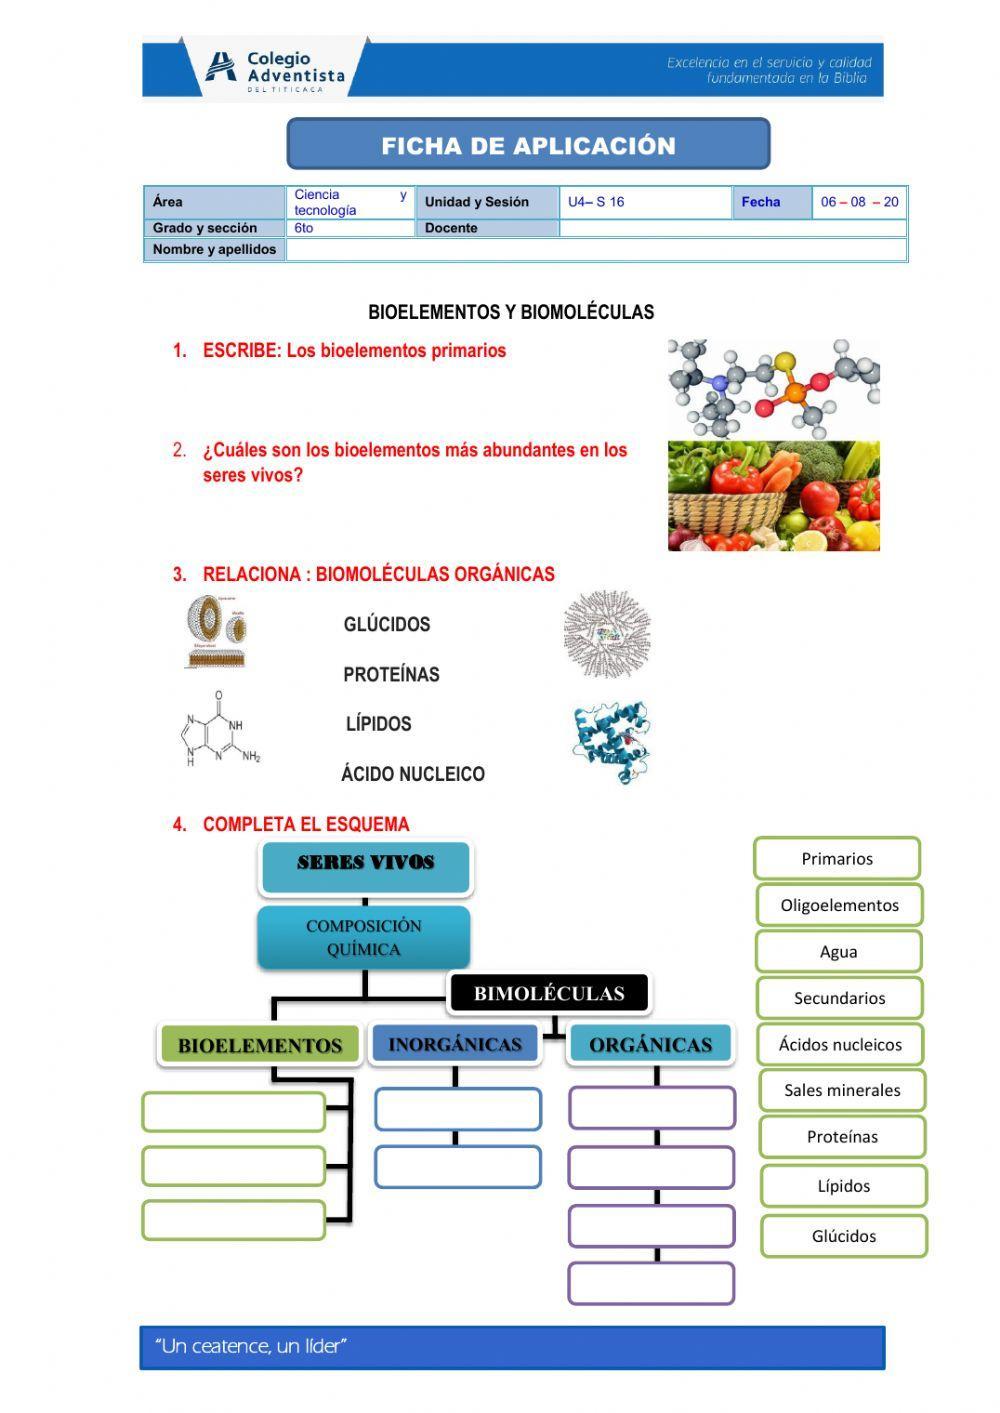 Bioelementos y biomoléculas